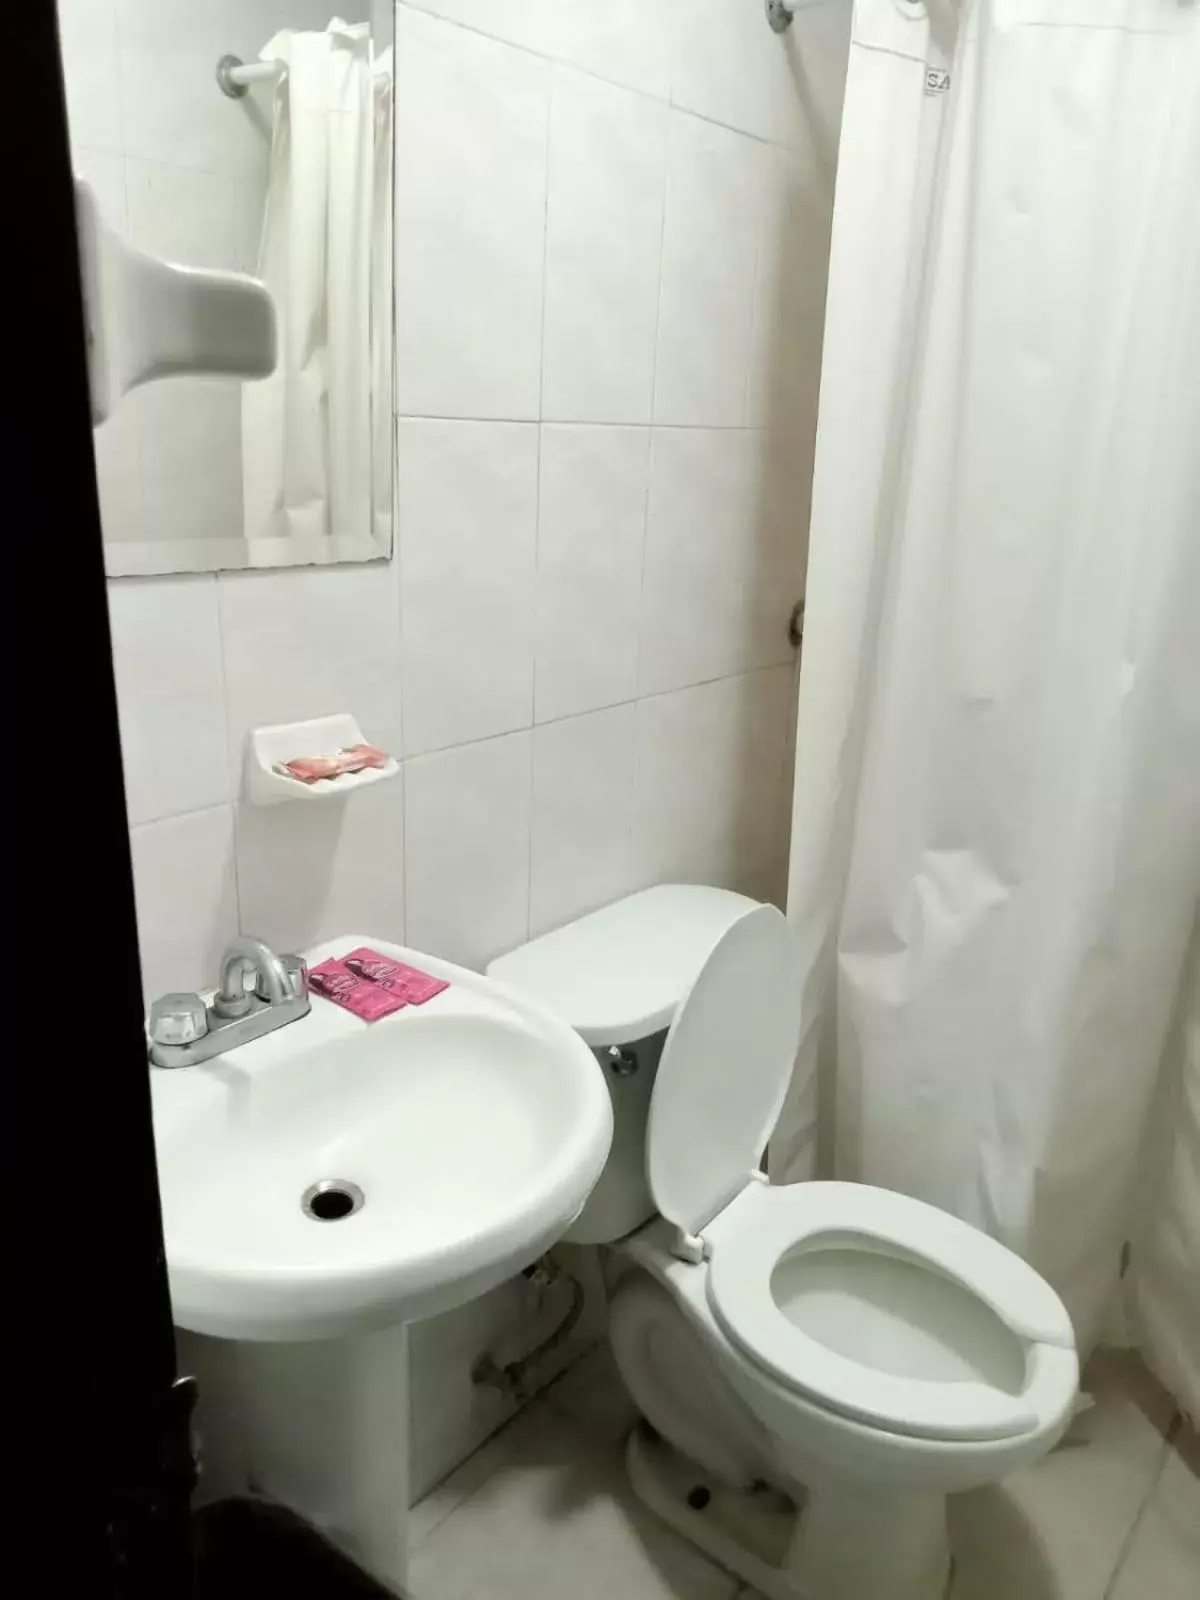 Bathroom in Hotel Santander Veracruz - Malecon